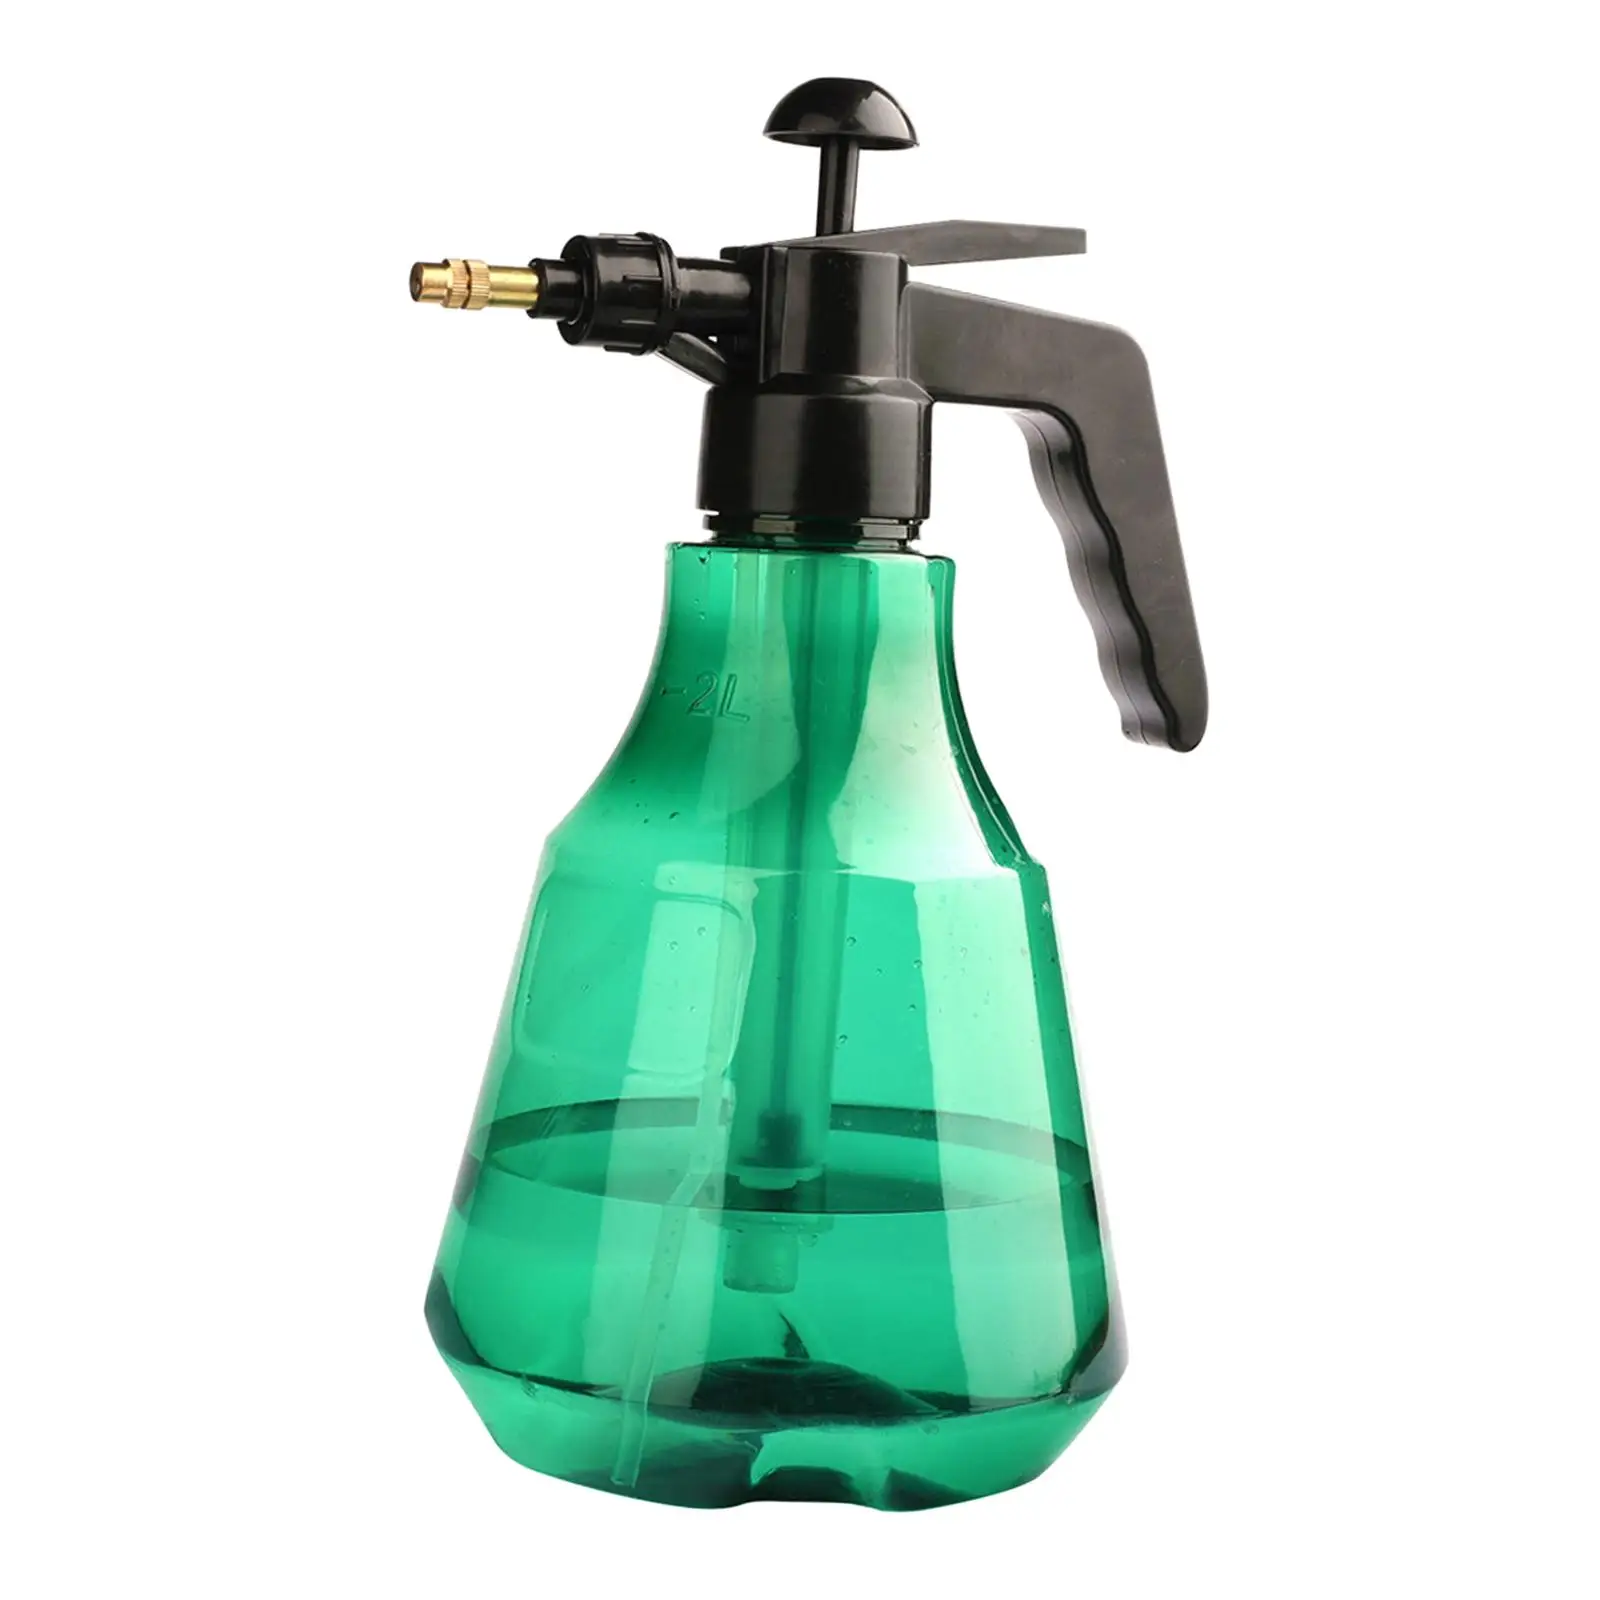 Hand Pressure Pump Sprayer Brass Nozzle Garden Water Sprayer for Gardening